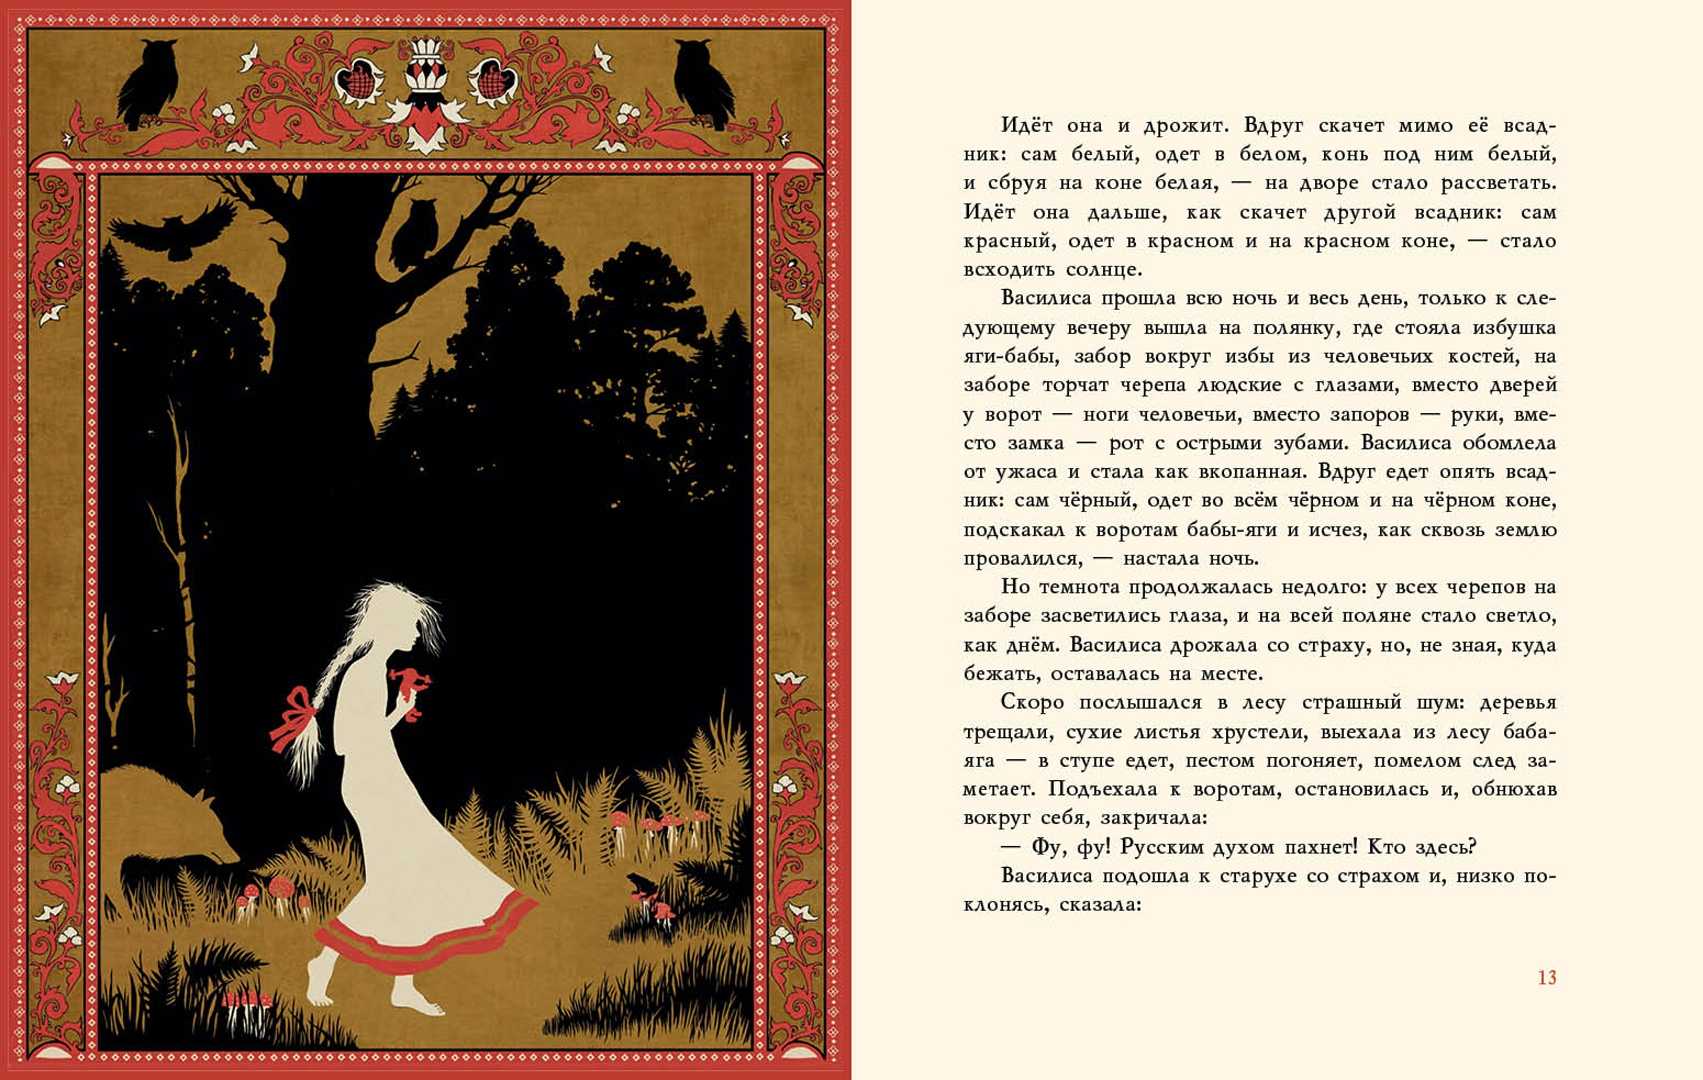 Читать сказку василиса прекрасная - русская сказка, онлайн бесплатно с иллюстрациями.